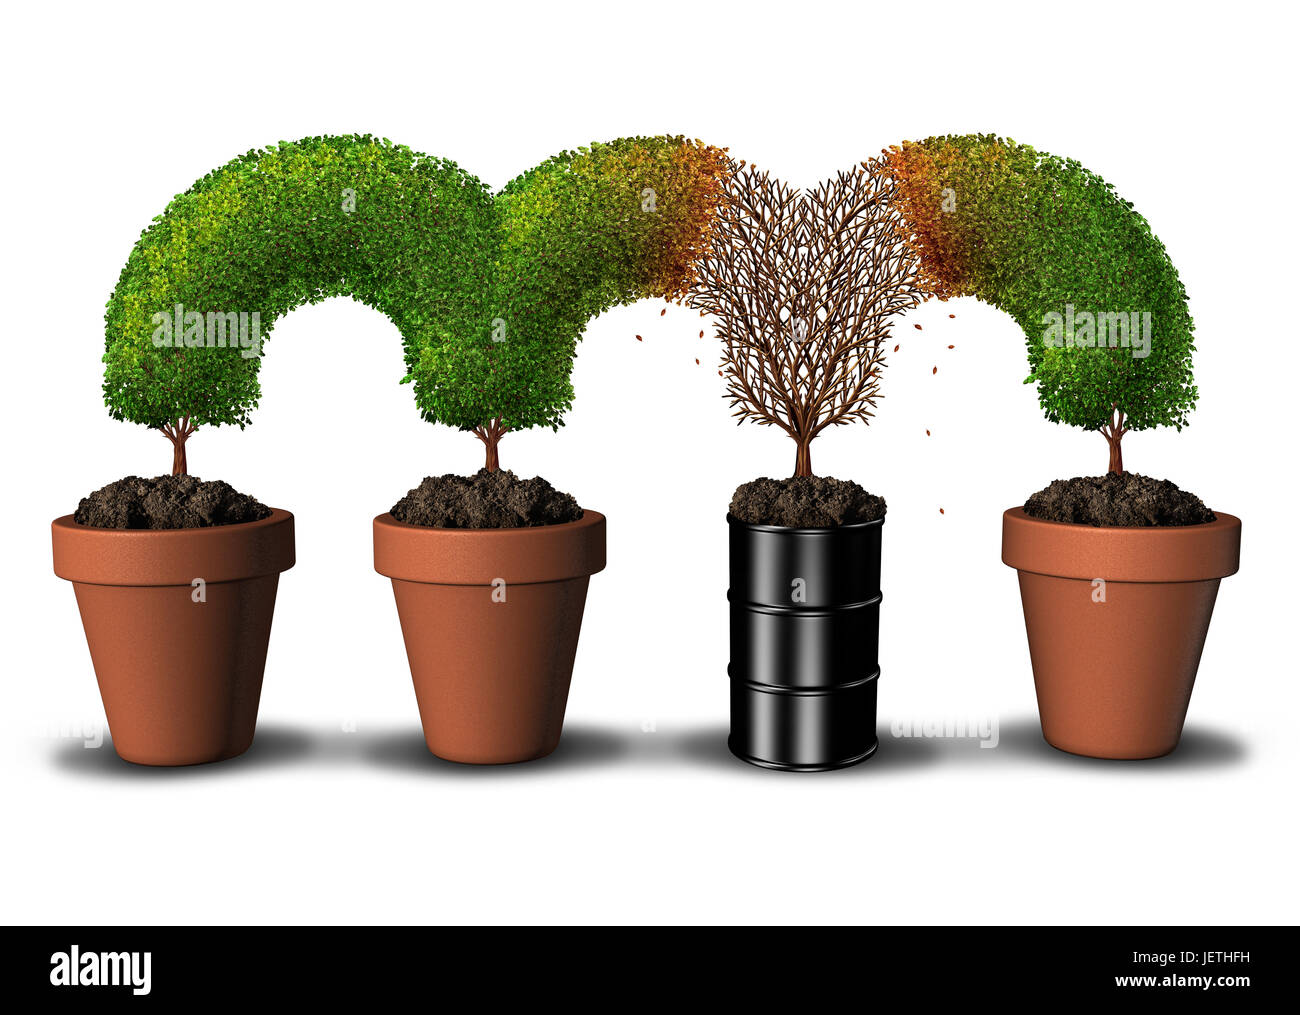 Kontaminierte Umwelt-Konzept mit Umweltverschmutzung und giftige Schadstoffe im Boden als ein toter Baum-Segment wächst in einem ein Erdöl kann. Stockfoto